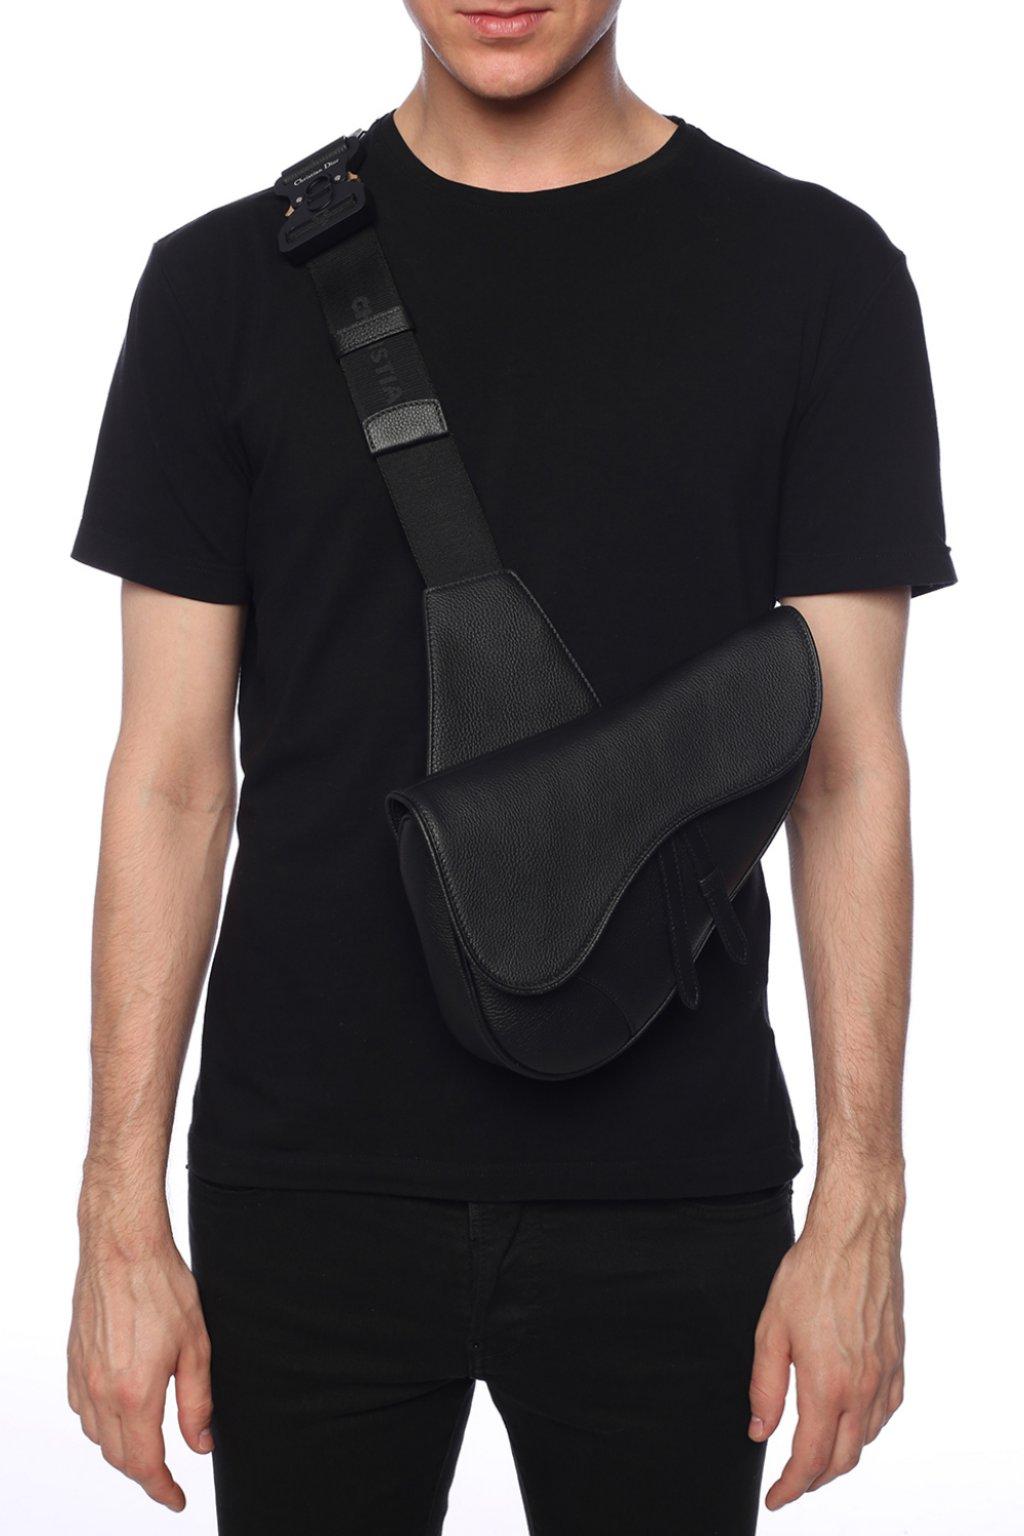 Dior &#39;saddle&#39; Shoulder Bag in Black for Men - Lyst